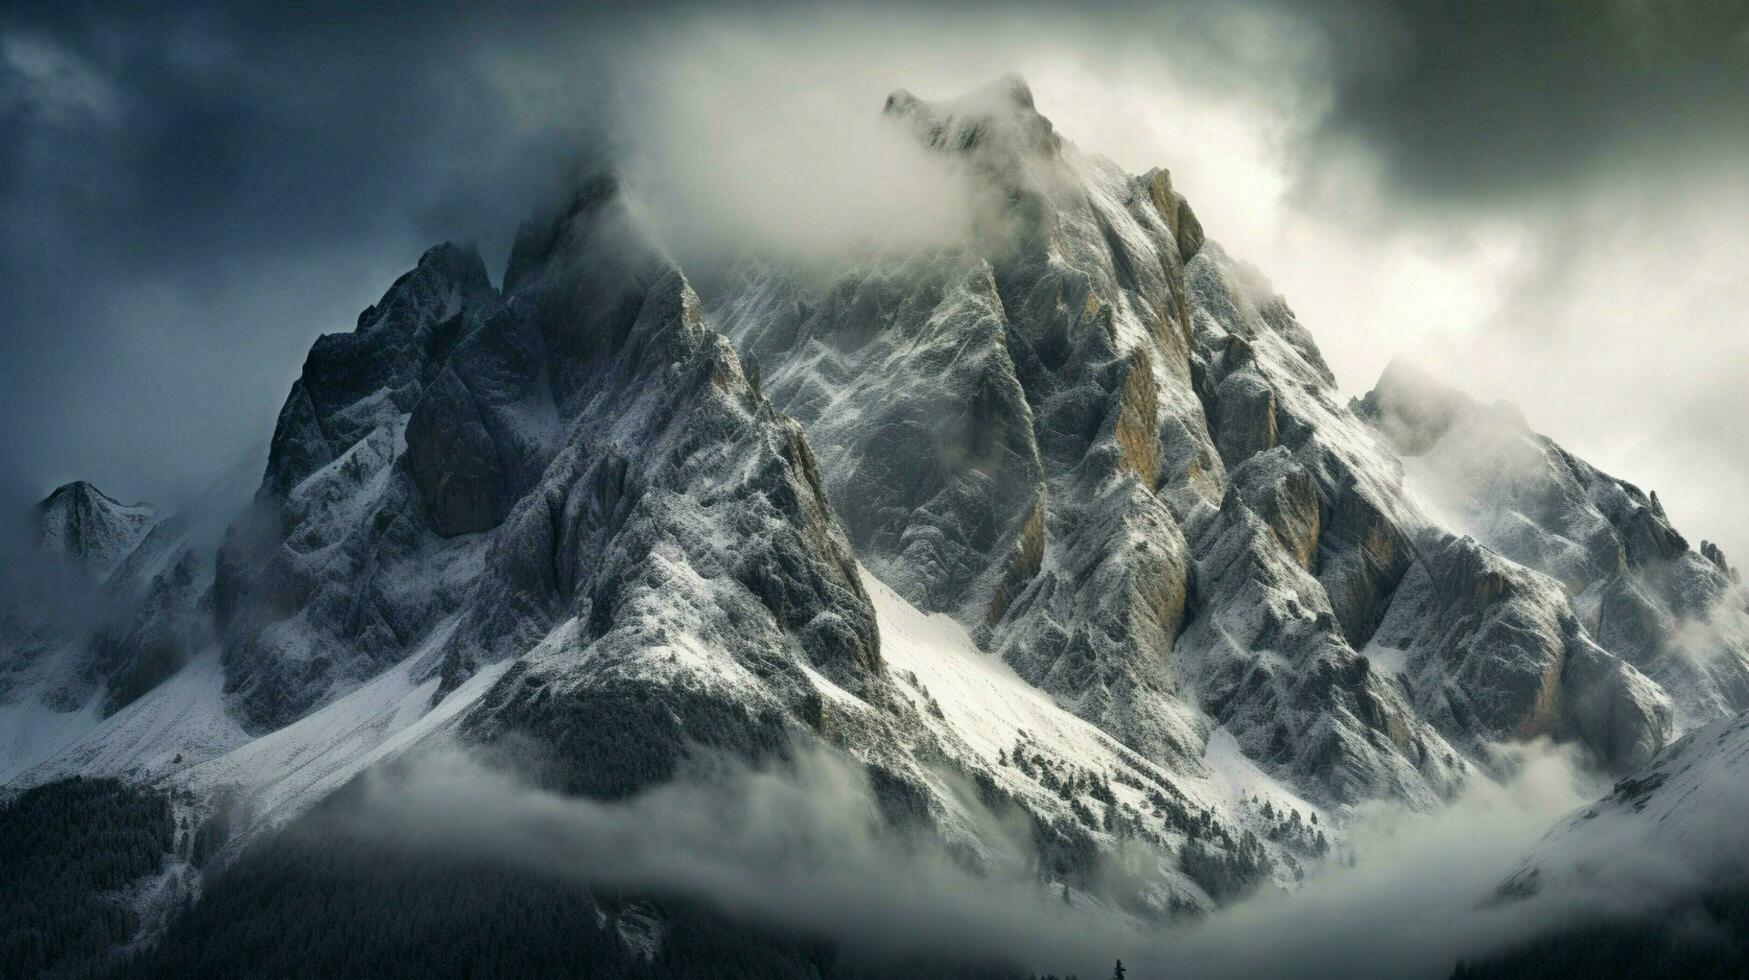 dolomites coberto montanhas do Itália gruppo di se foto